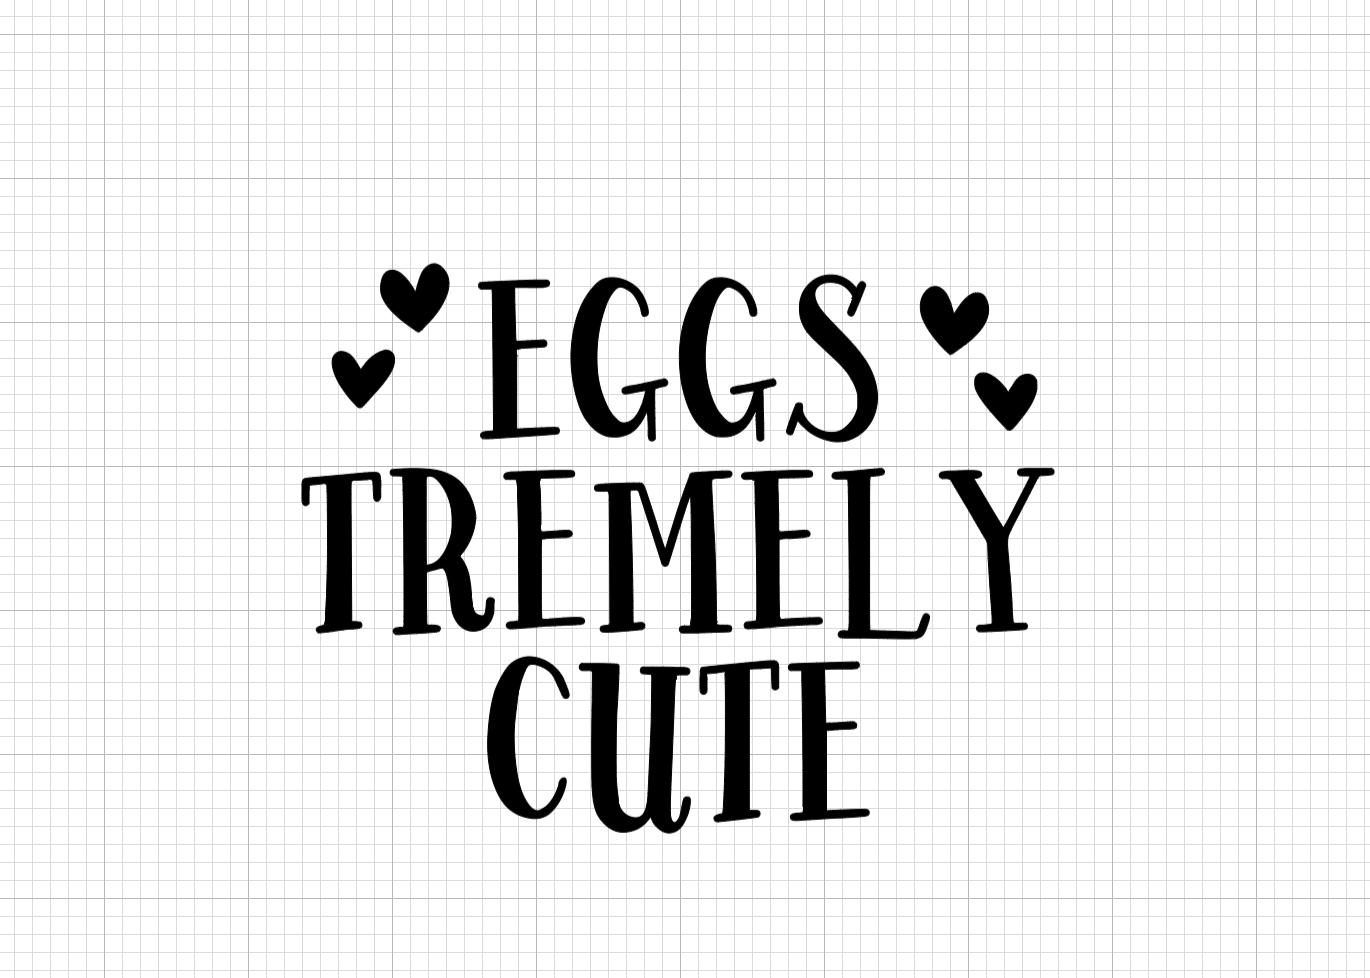 Eggs-Tremelyl Cute Vinyl Add-on